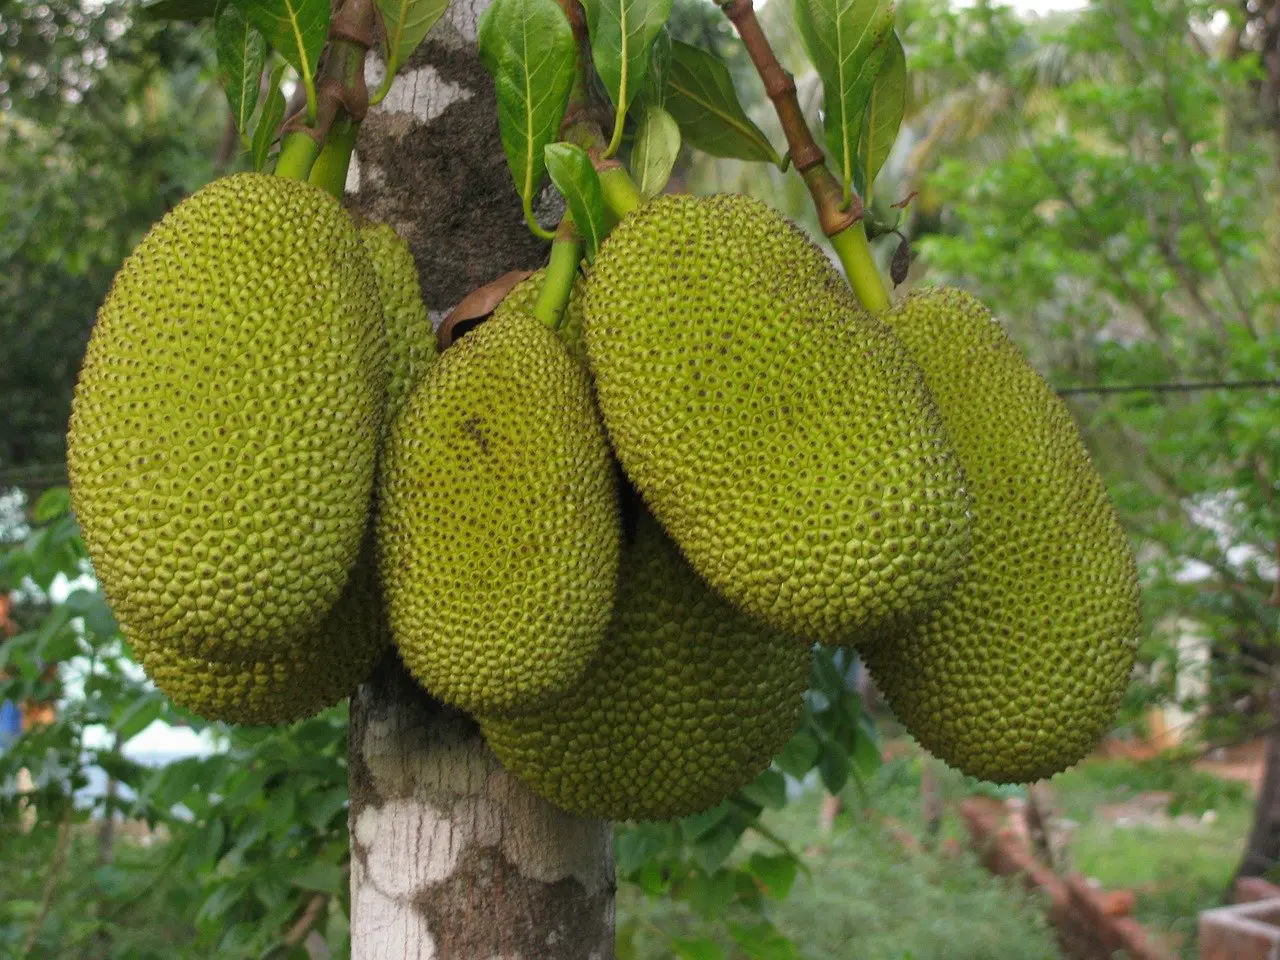 The largest Fruit vietnam 